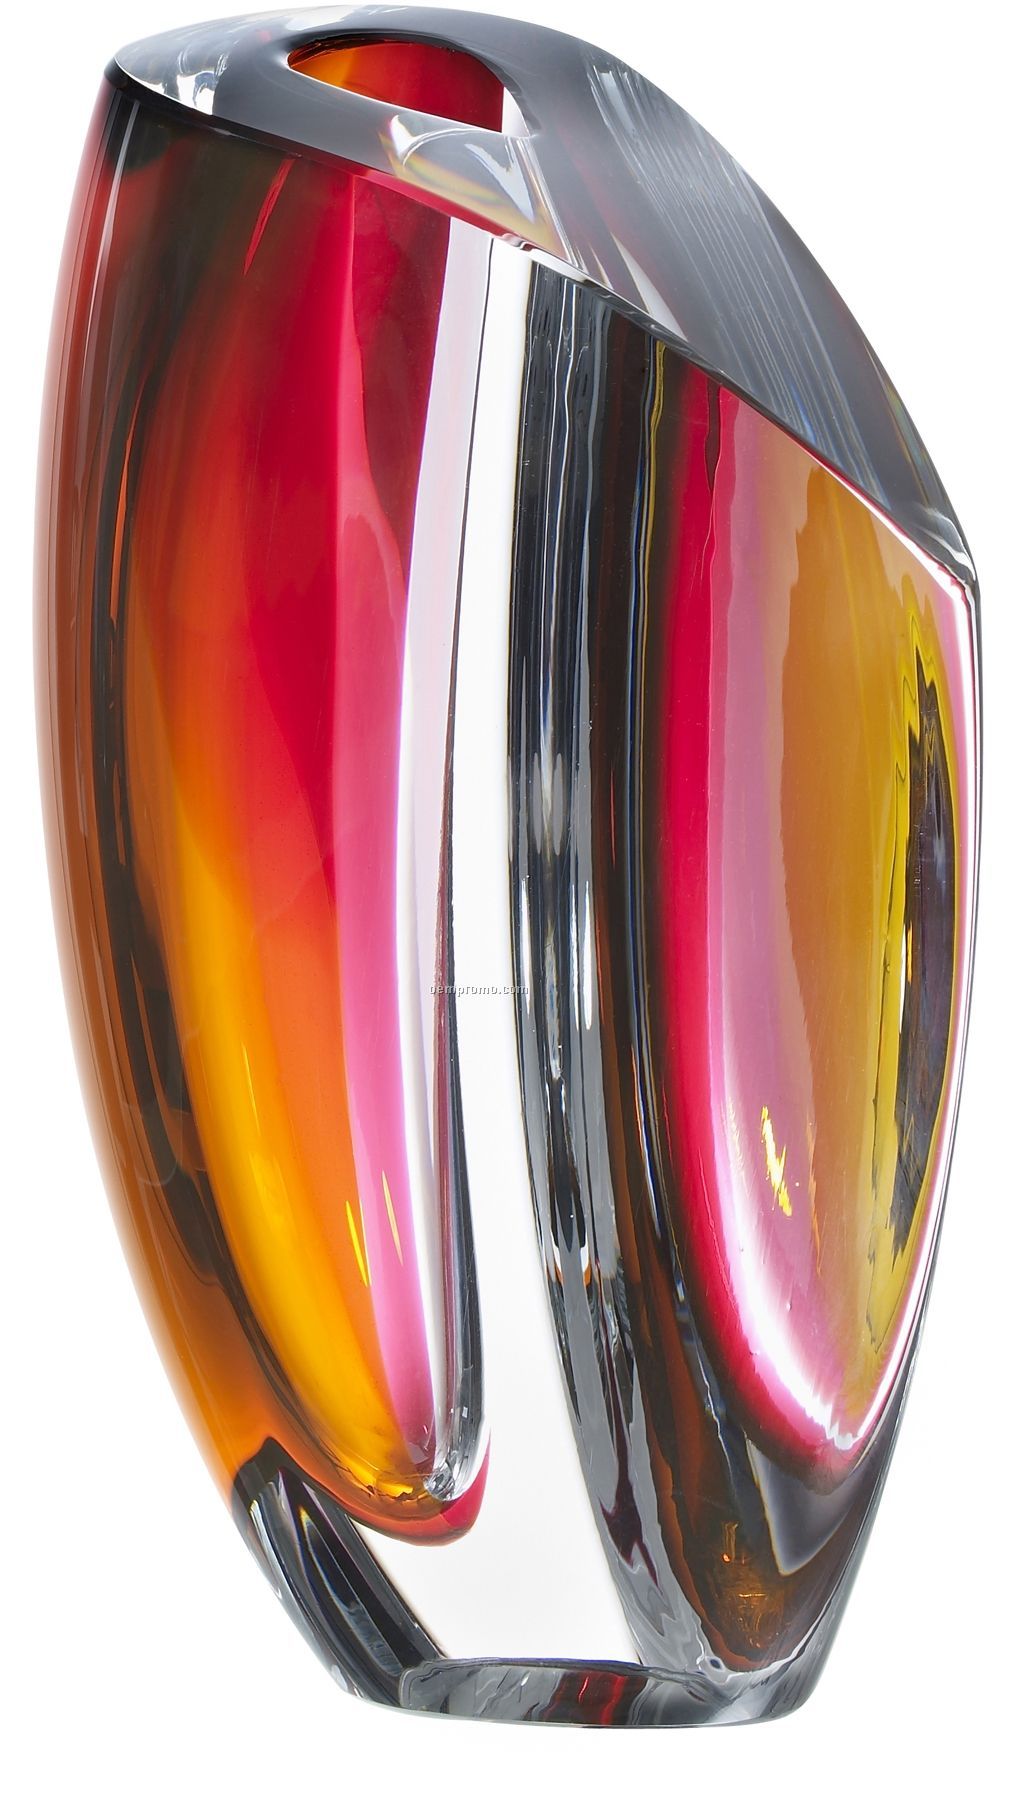 Mirage Glass Vase By Goran Warff (Grey & Red)